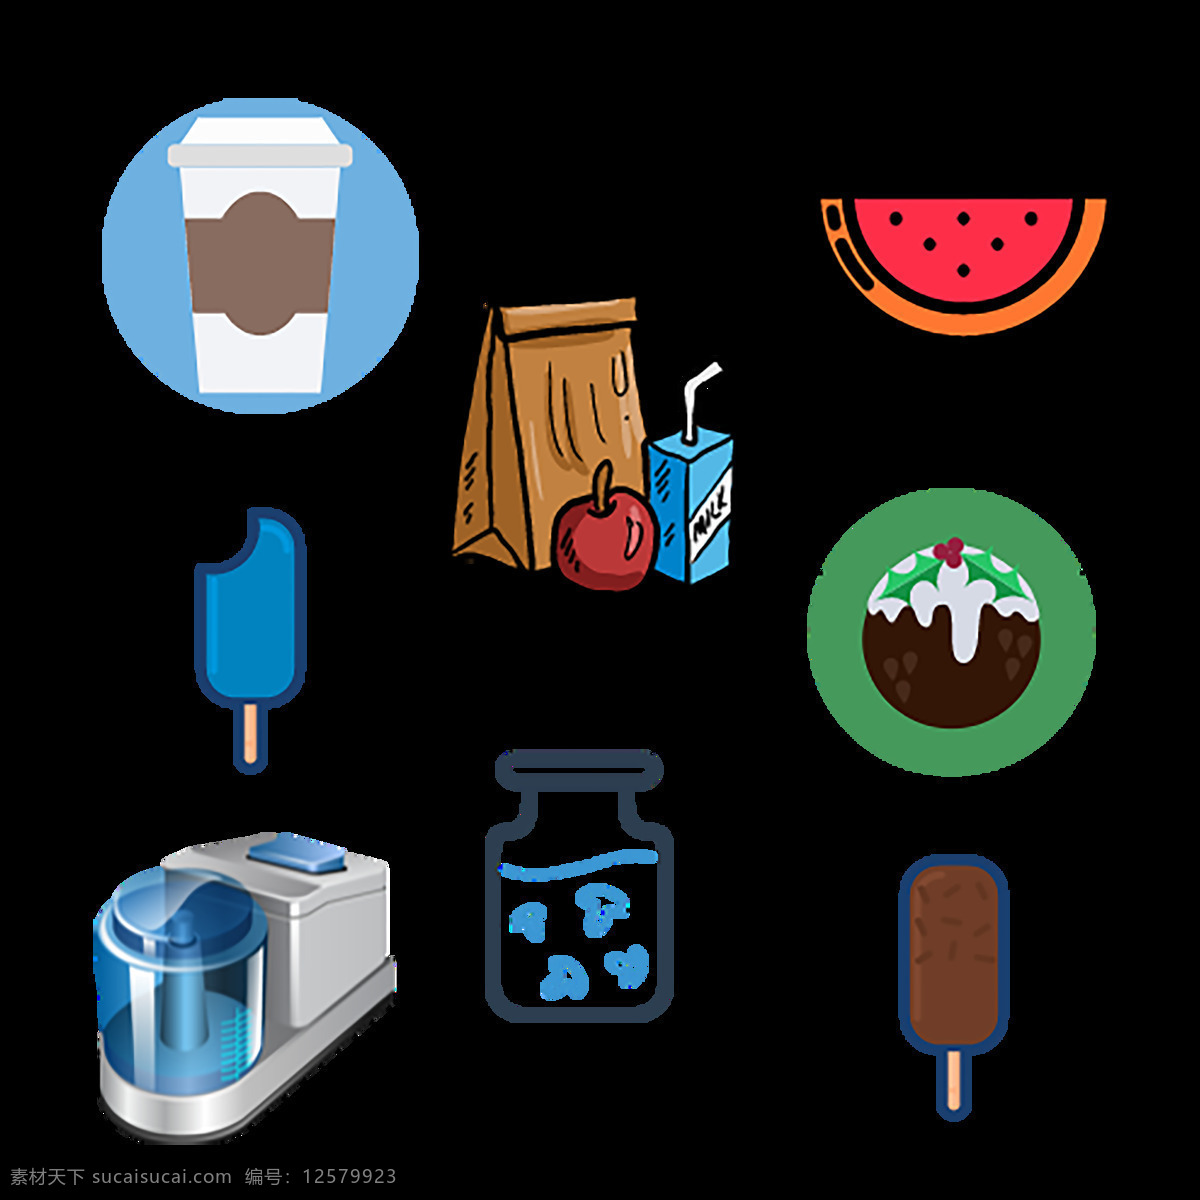 食品 饮料 图标 冰淇淋 水果 苹果 牛奶 鸡肉 面包 橙汁 冰 杯 食品的图标 手绘 清新色彩